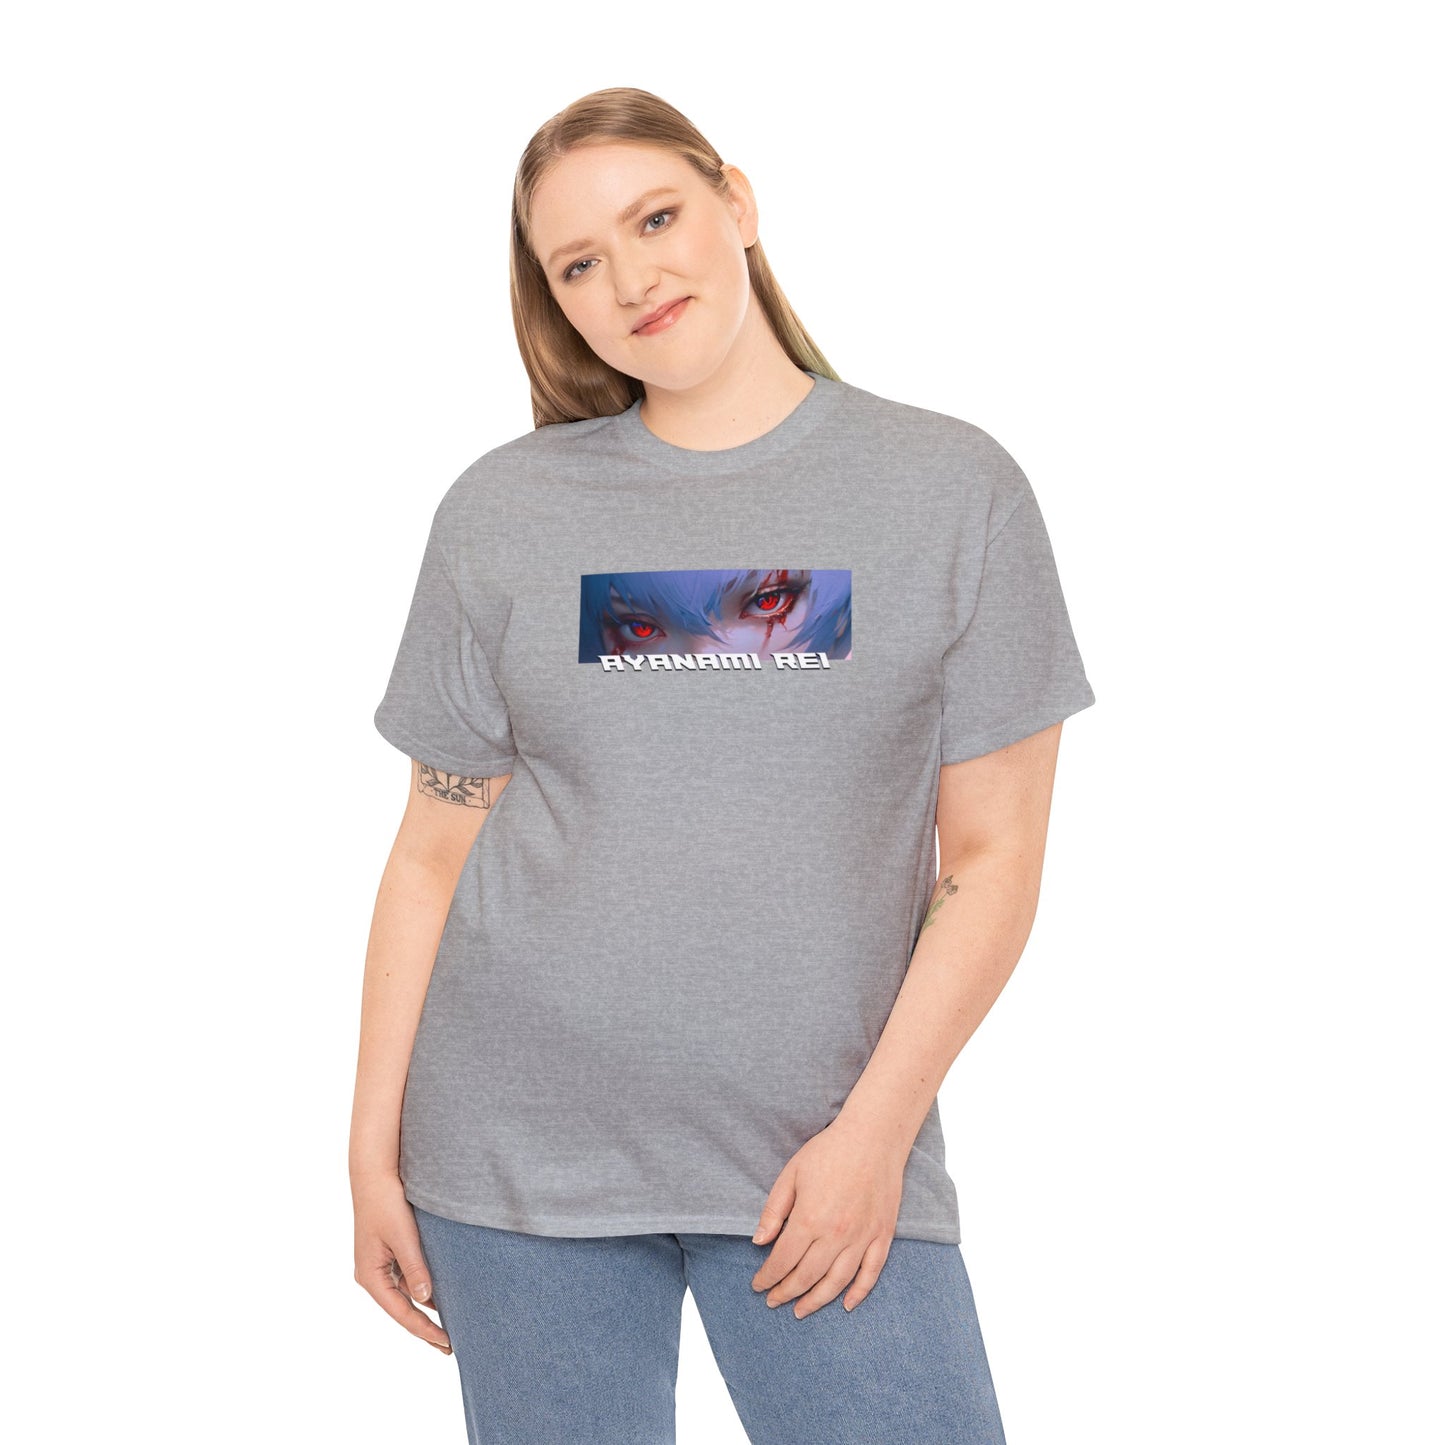 T-Shirt - Ayanami Rei